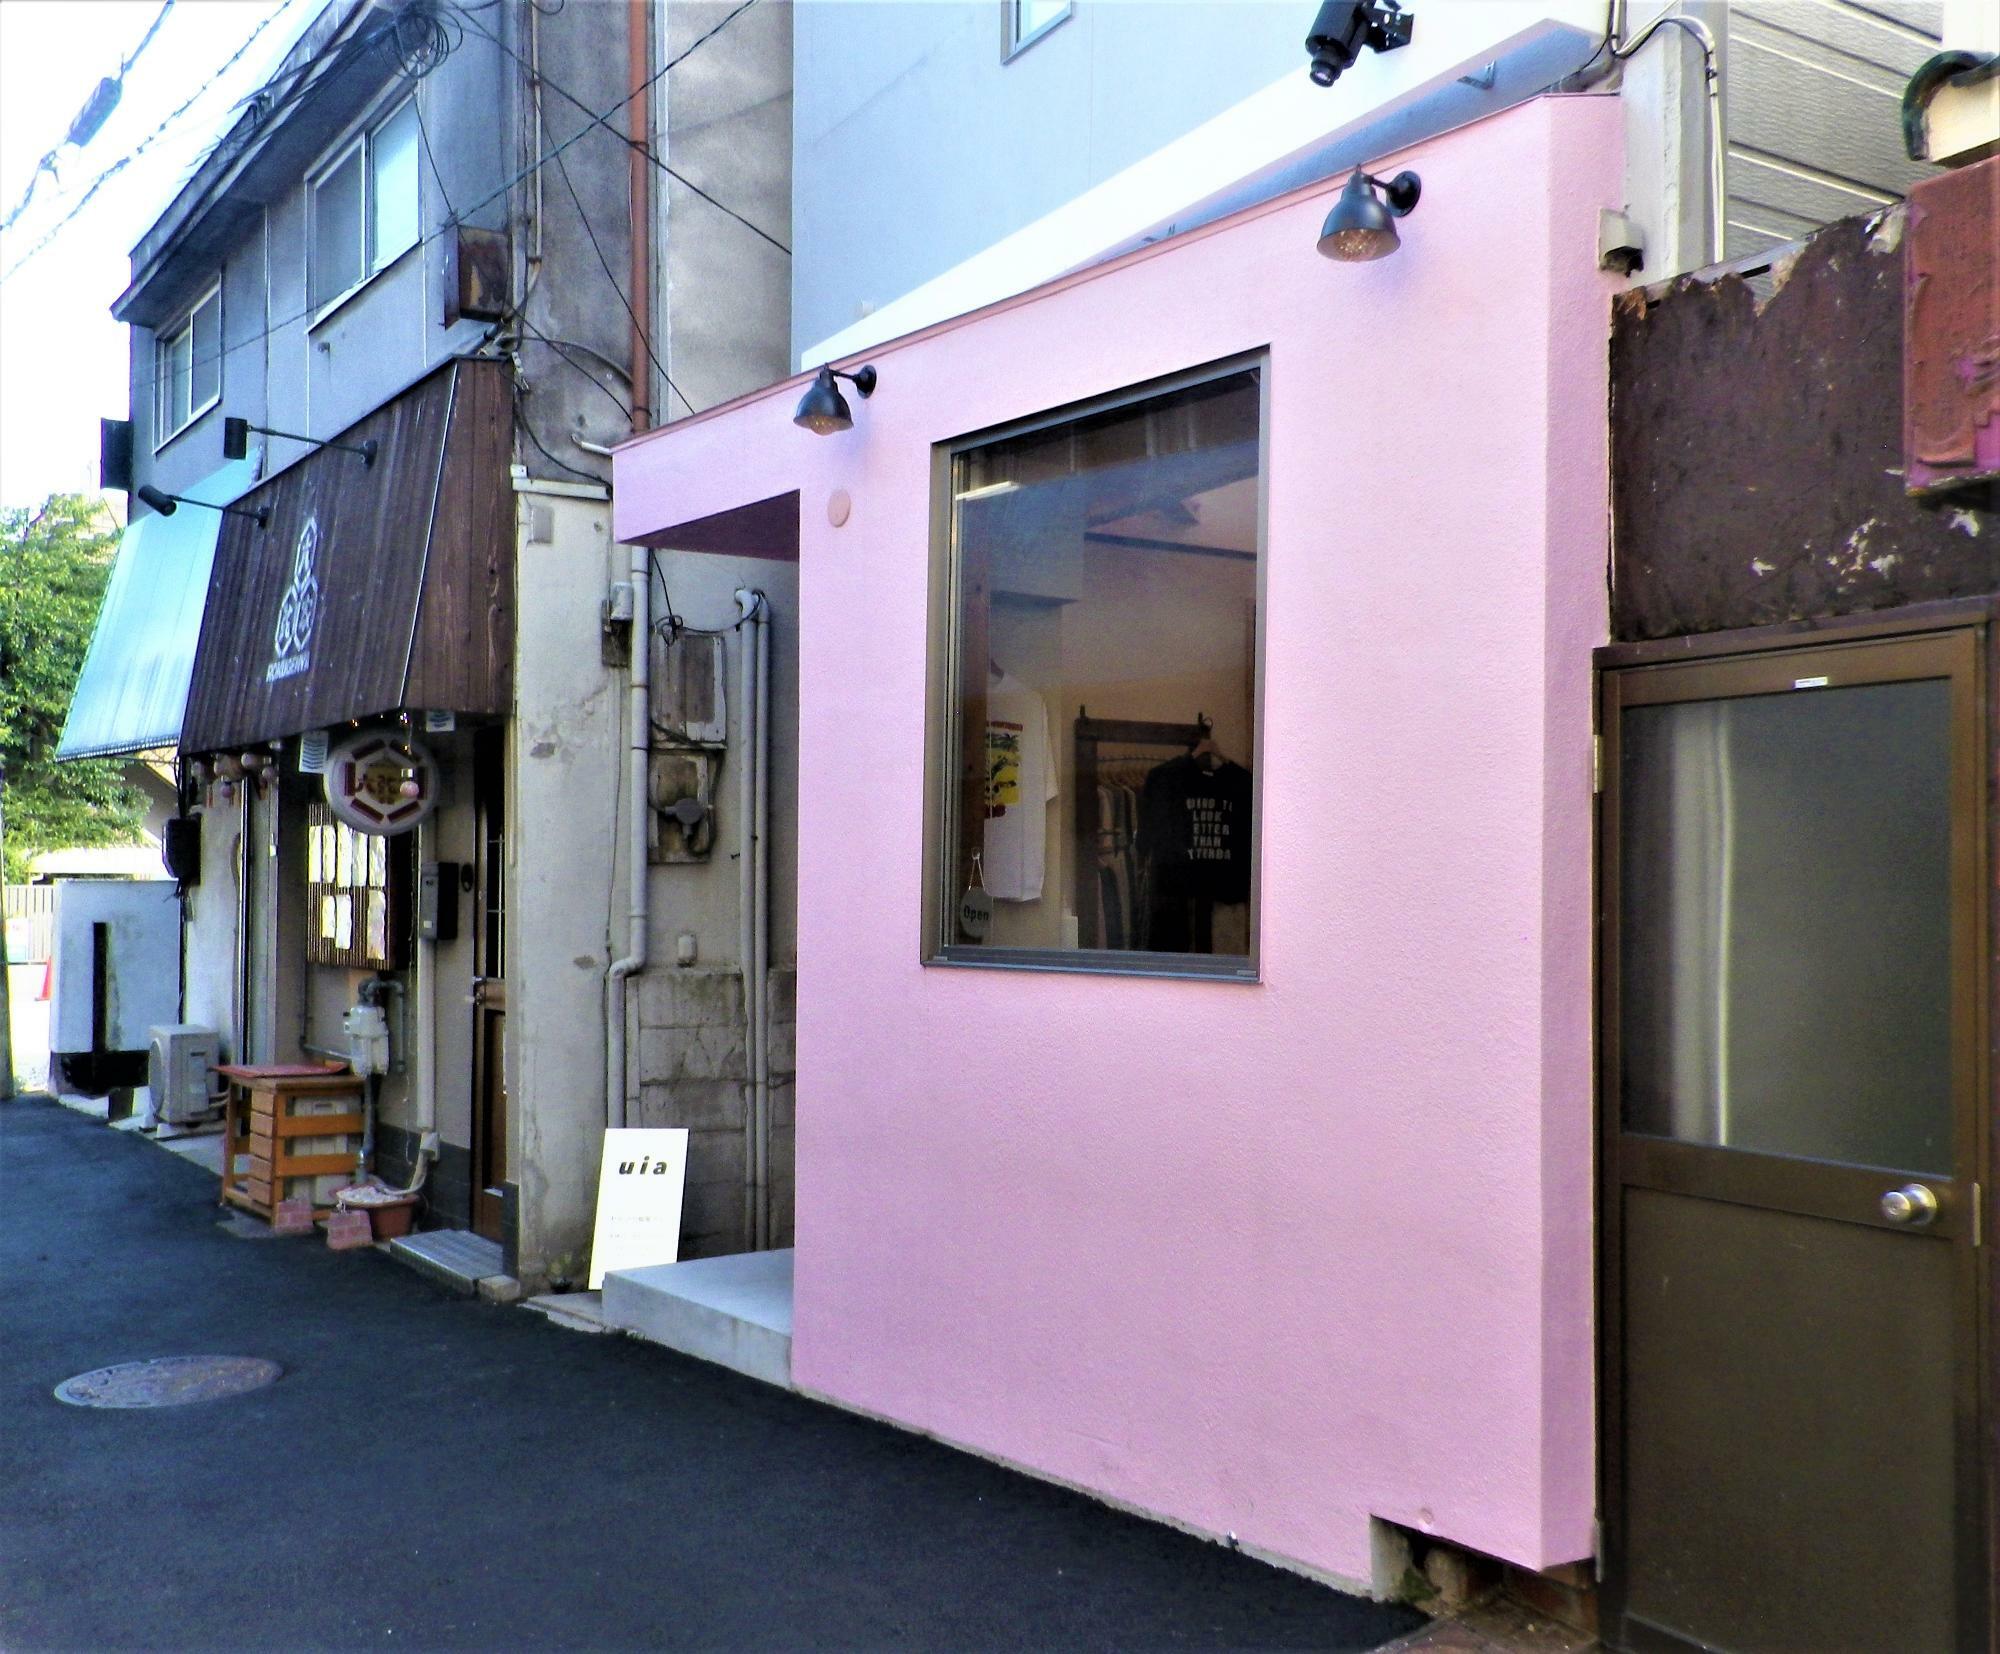 壁のカラーのピンクパープルが印象的な、おしゃれなお店「uia（ウイア）」。